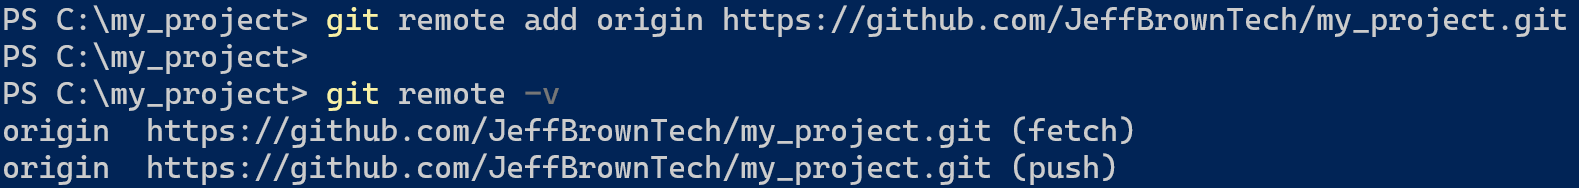 Ein Screenshot des Hinzufügens einer Remote-URL vor dem Mergen in Git